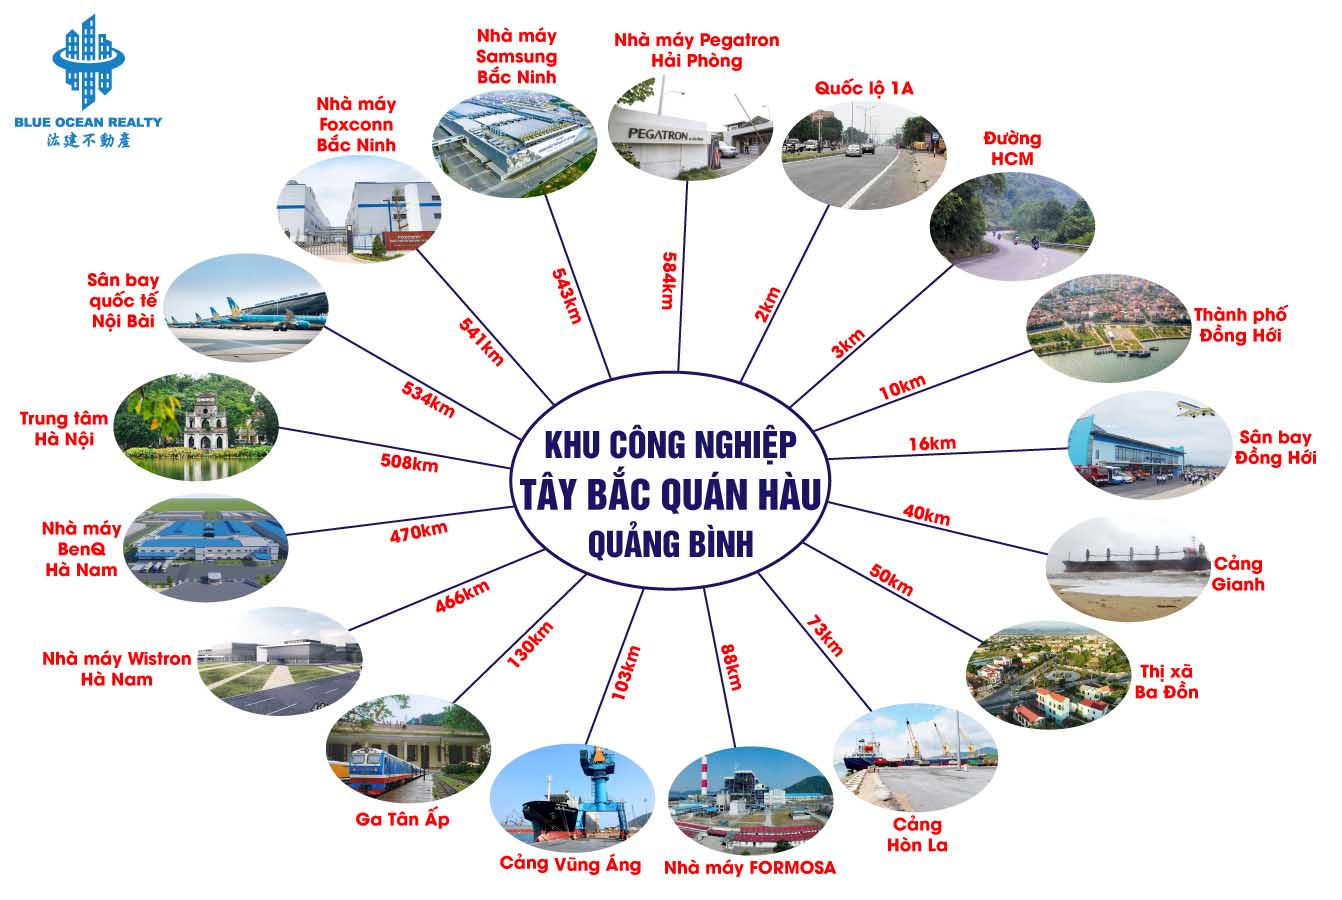 KCN Tây Bắc Quán Hàu tỉnh Quảng Bình